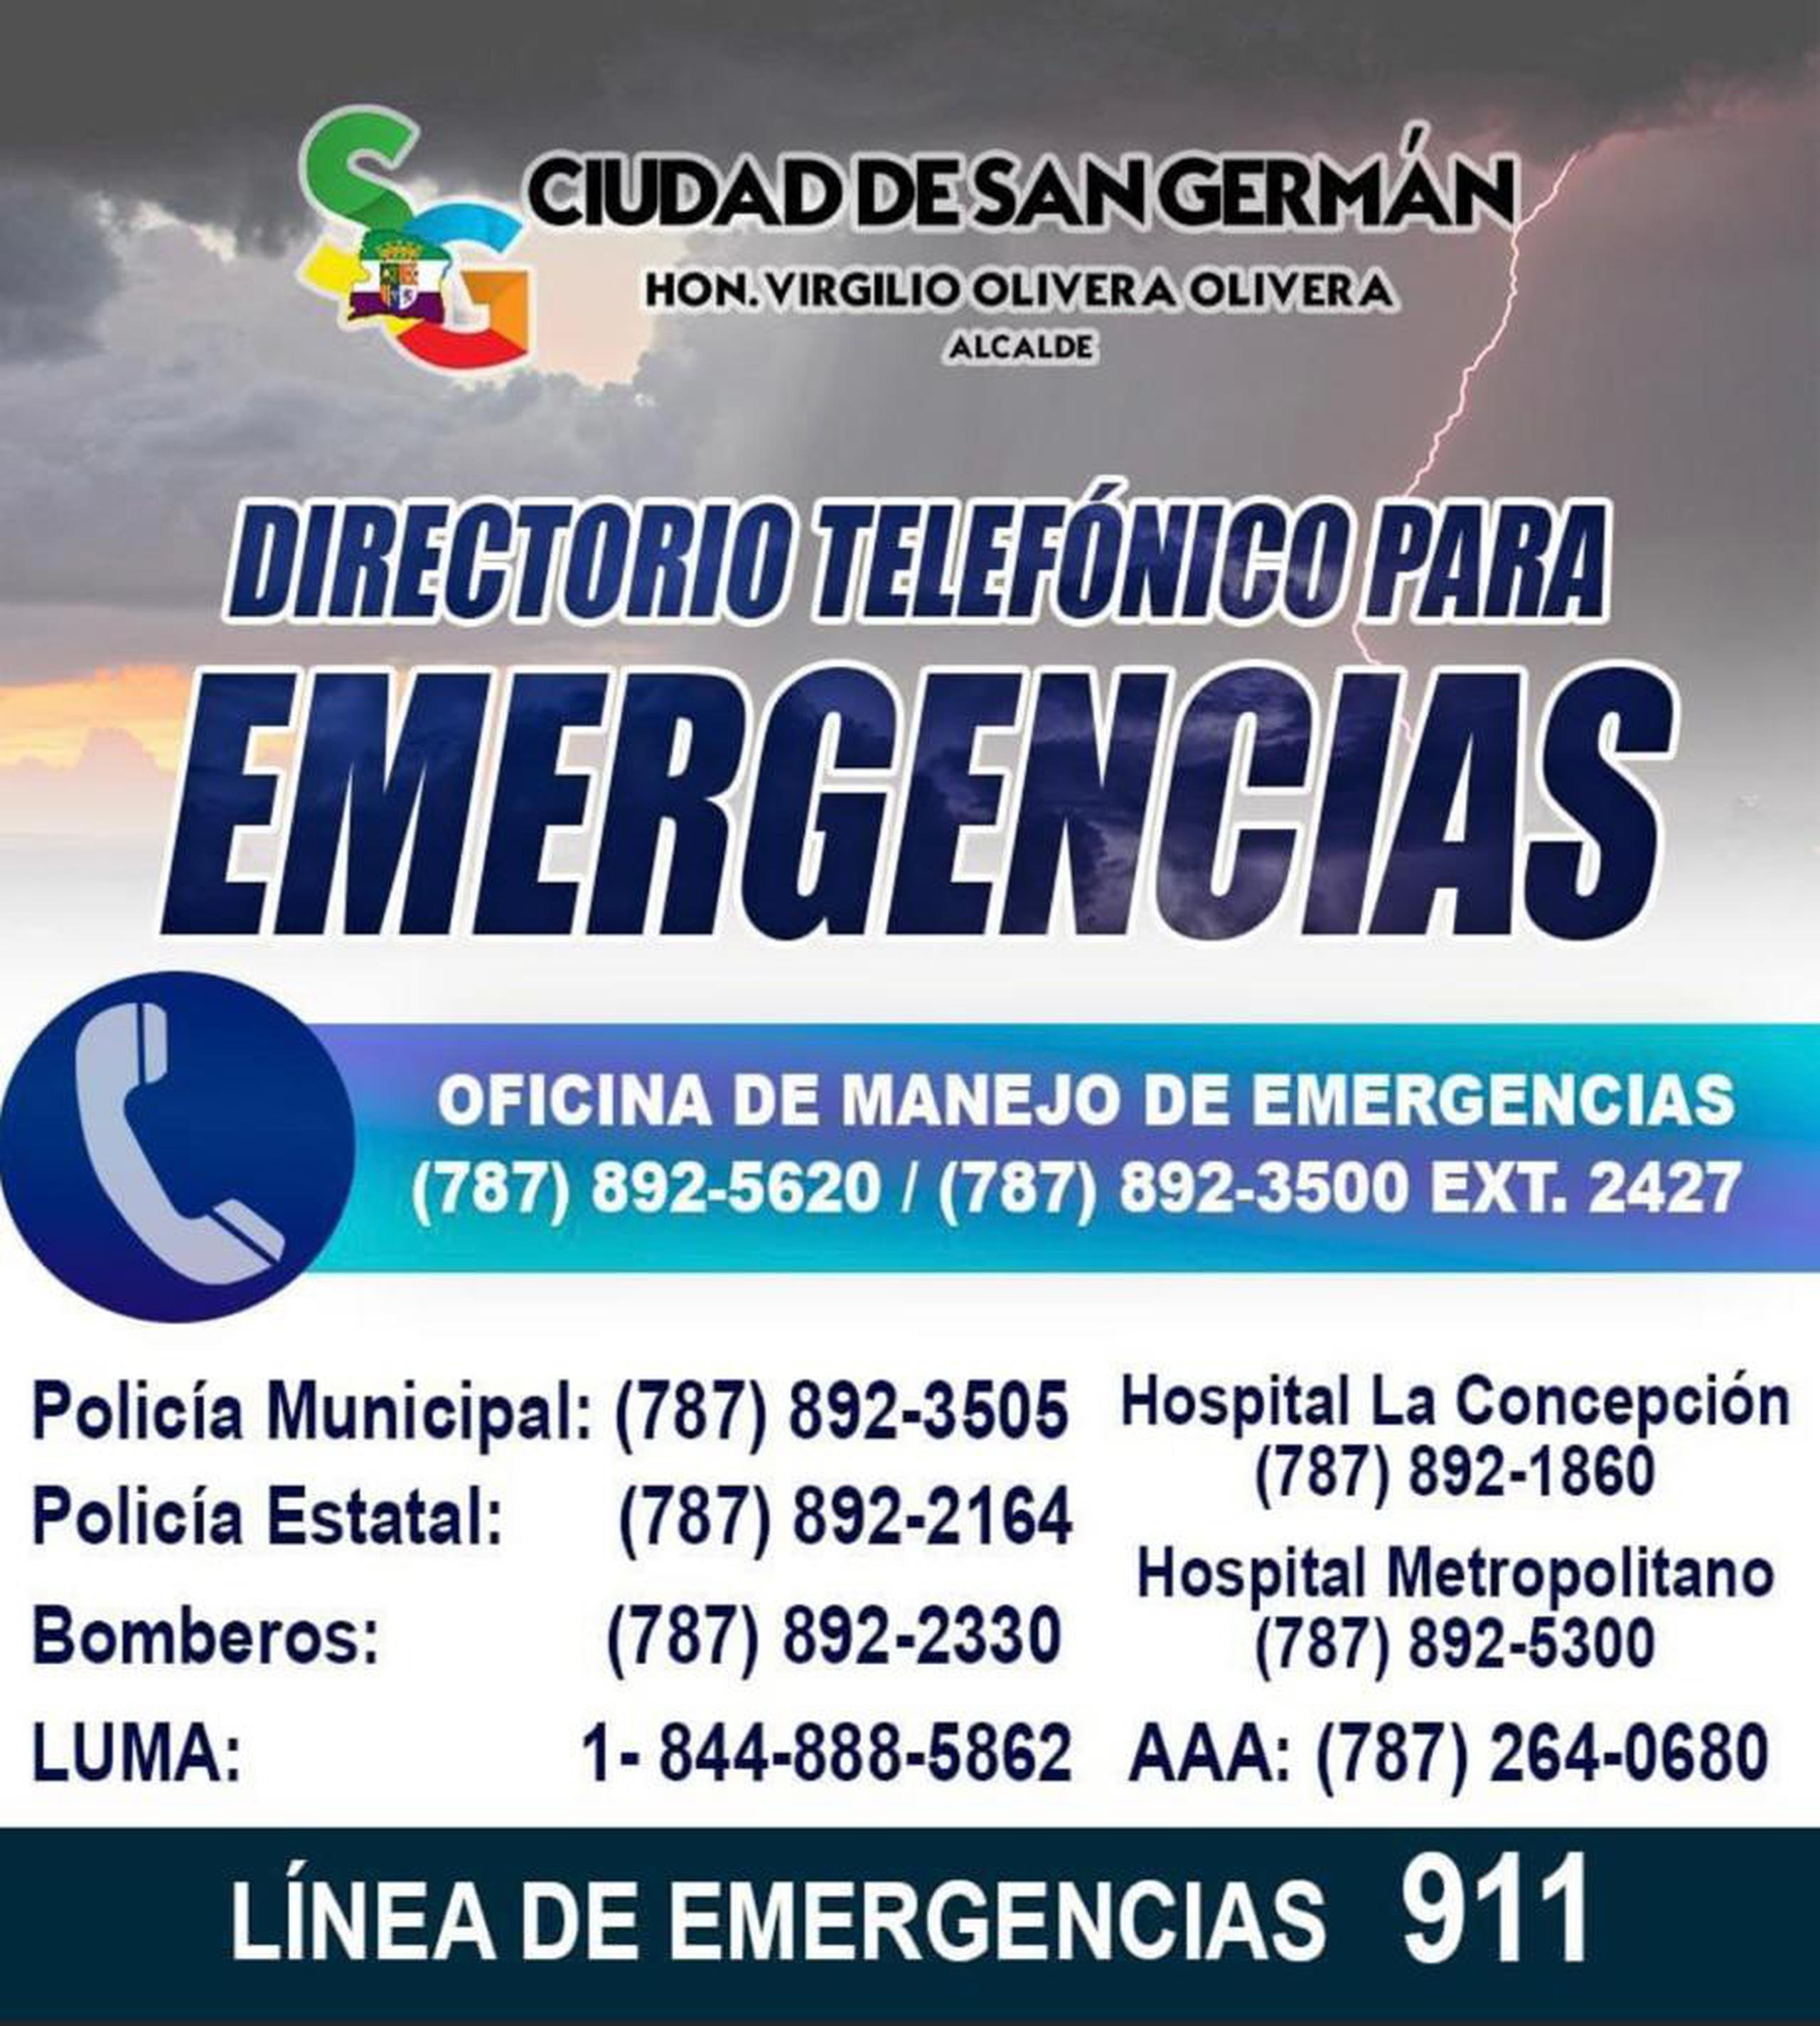 Números telefónicos de emergencia que compartió el municipio de San Germán.